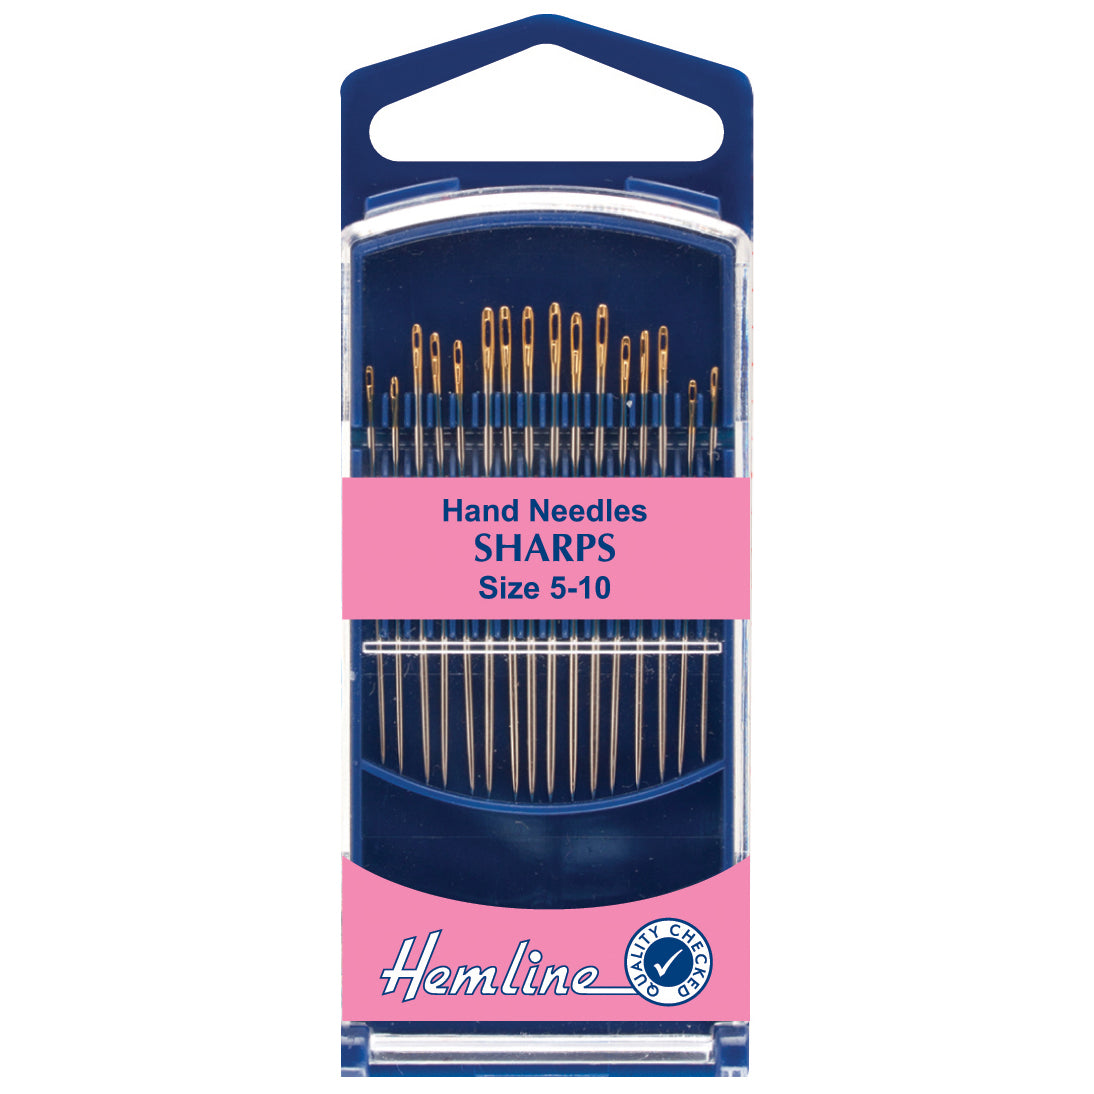 Hemline Premium Hand Needles Sharps sizes 5 to 10